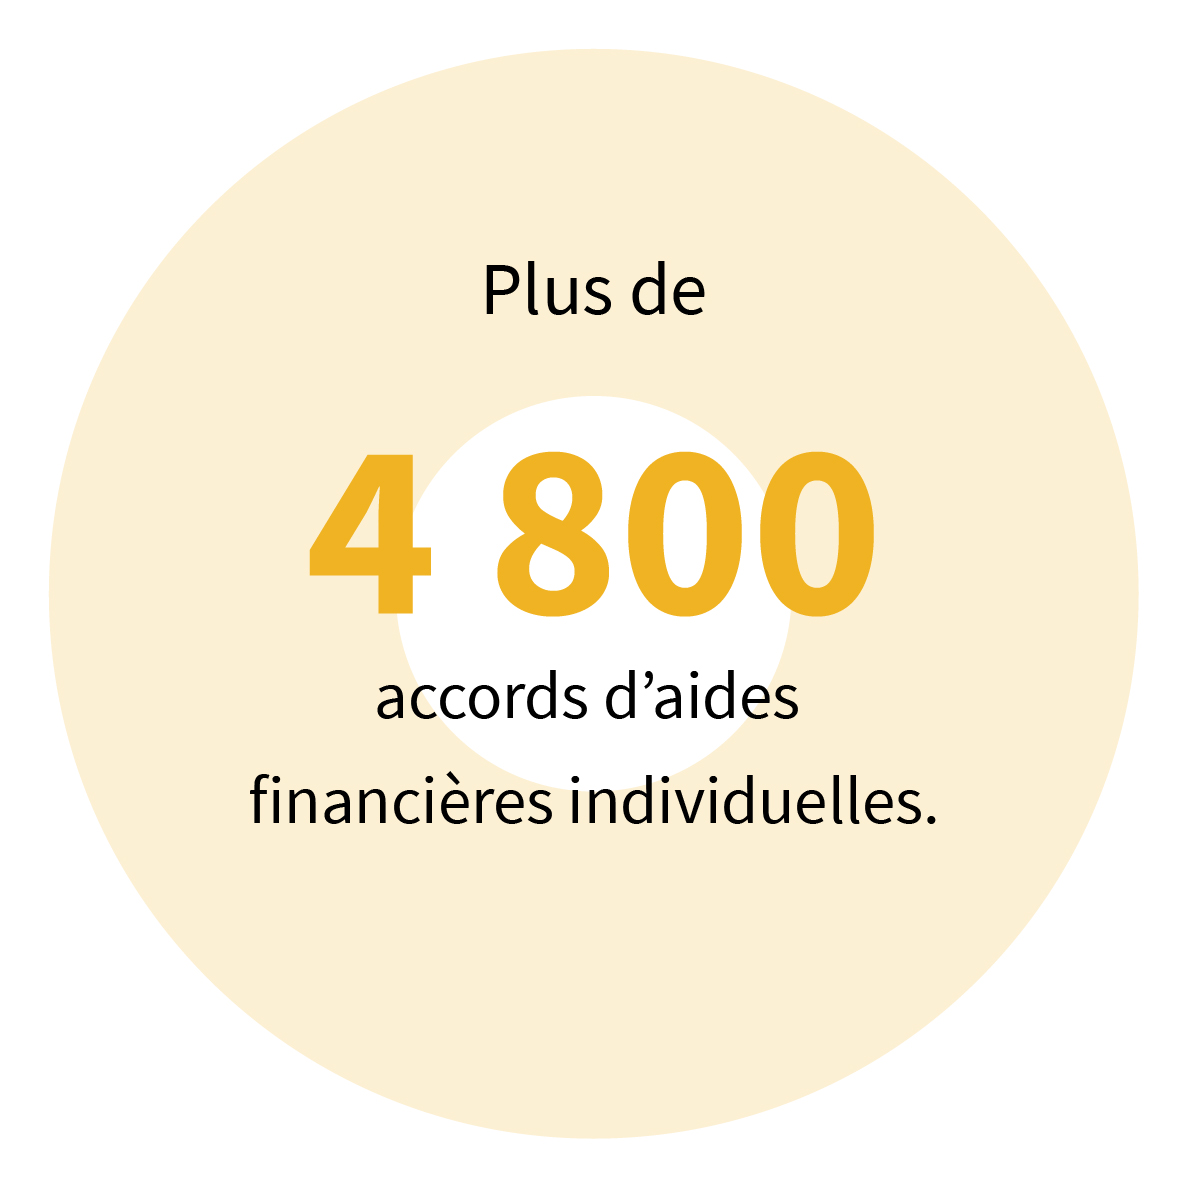 Plus de 4 800 accords d’aides financières individuelles.